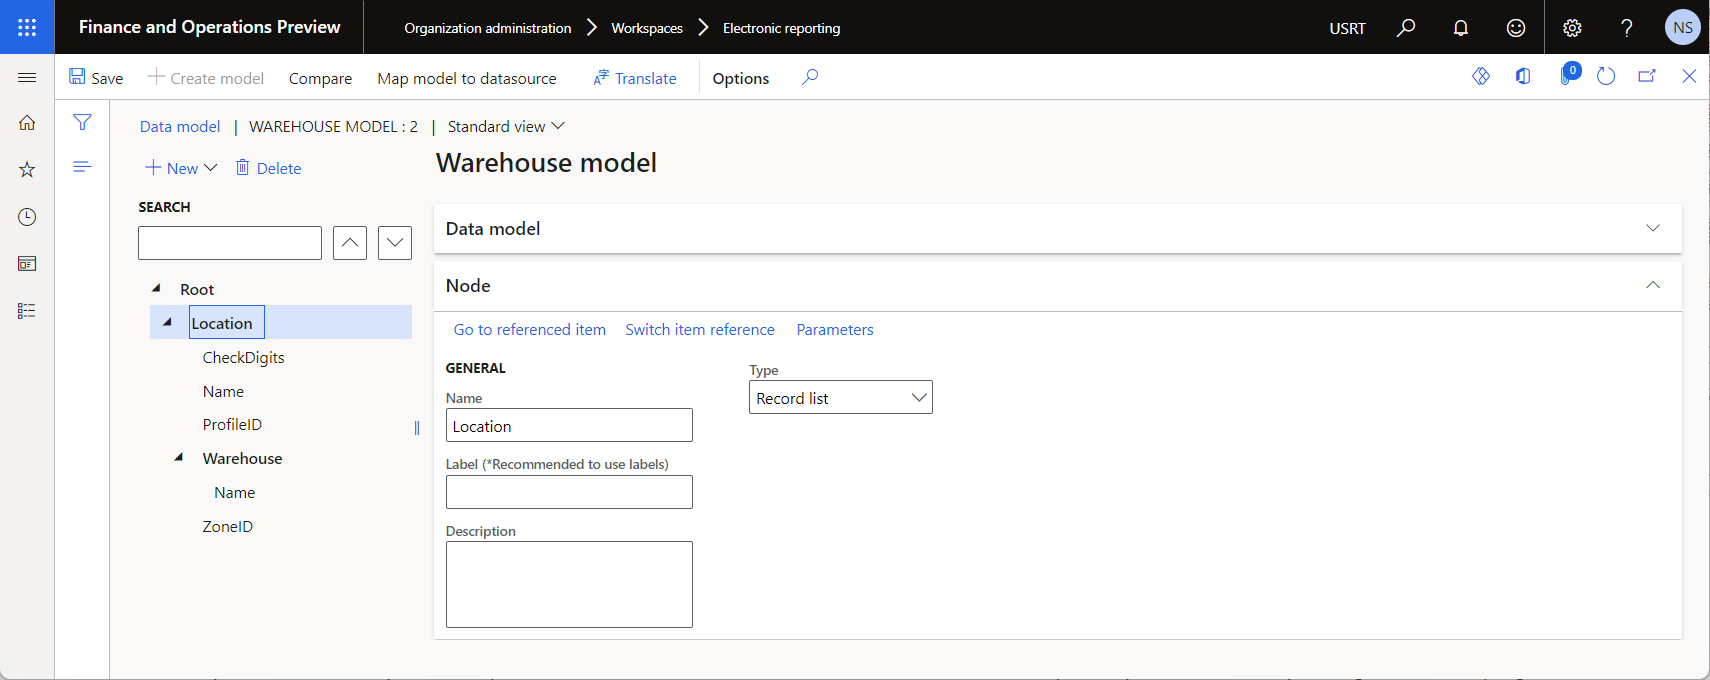 数据模型设计器页面上 ER 数据模型的结构。